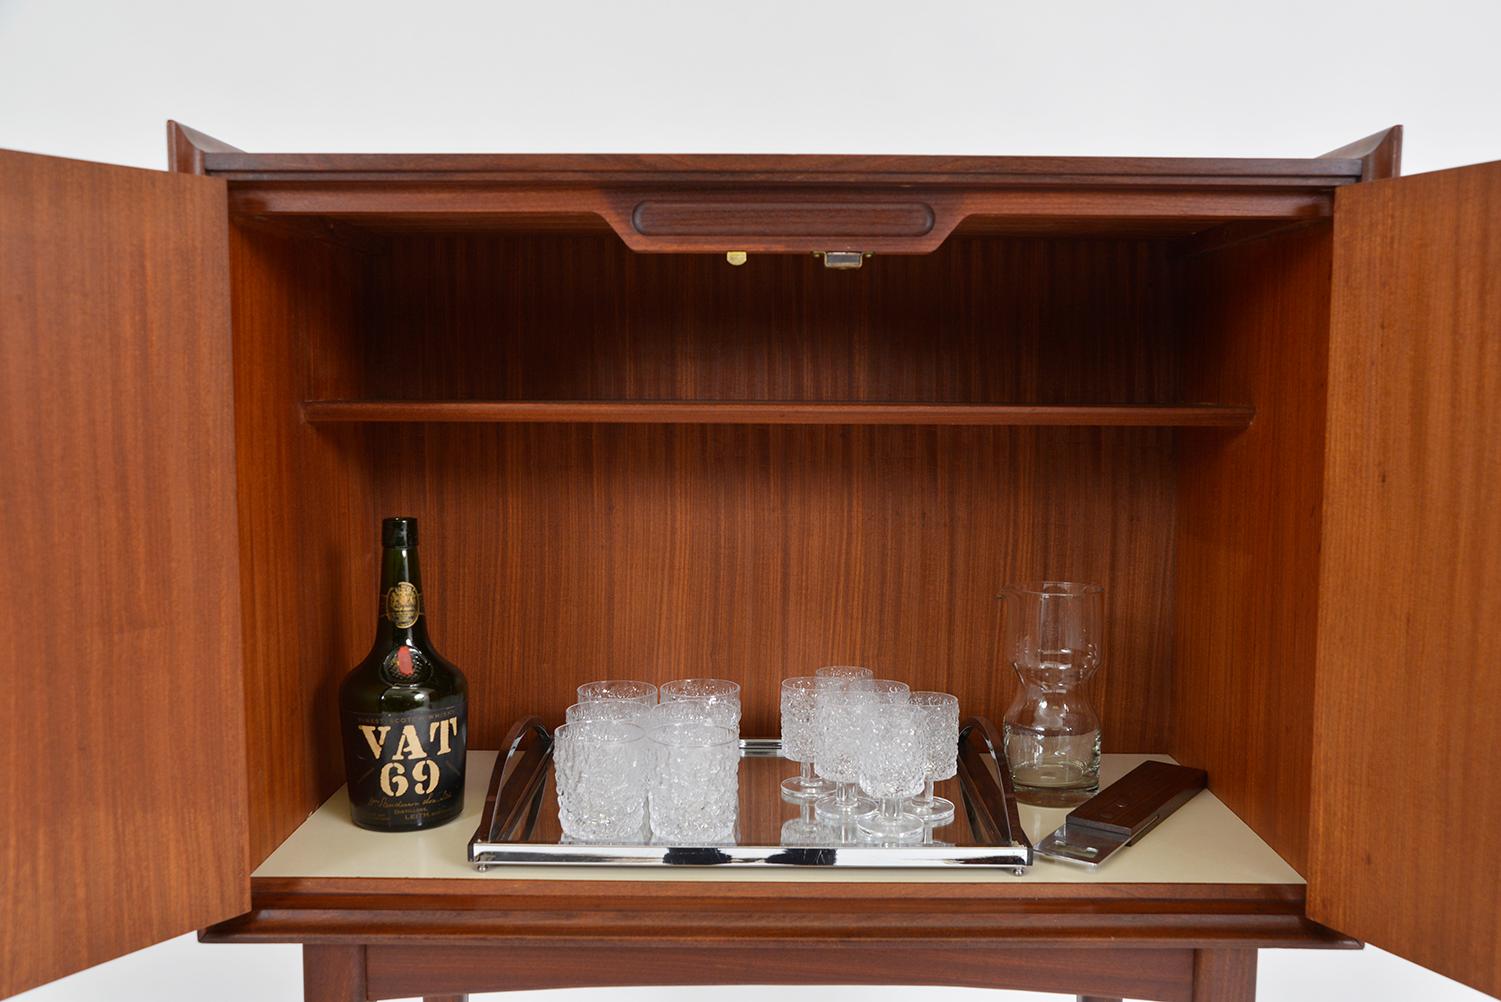 1960s Teak Drinks Cocktail Cabinet Richard Hornby for Fyne Ladye Furniture UK 1